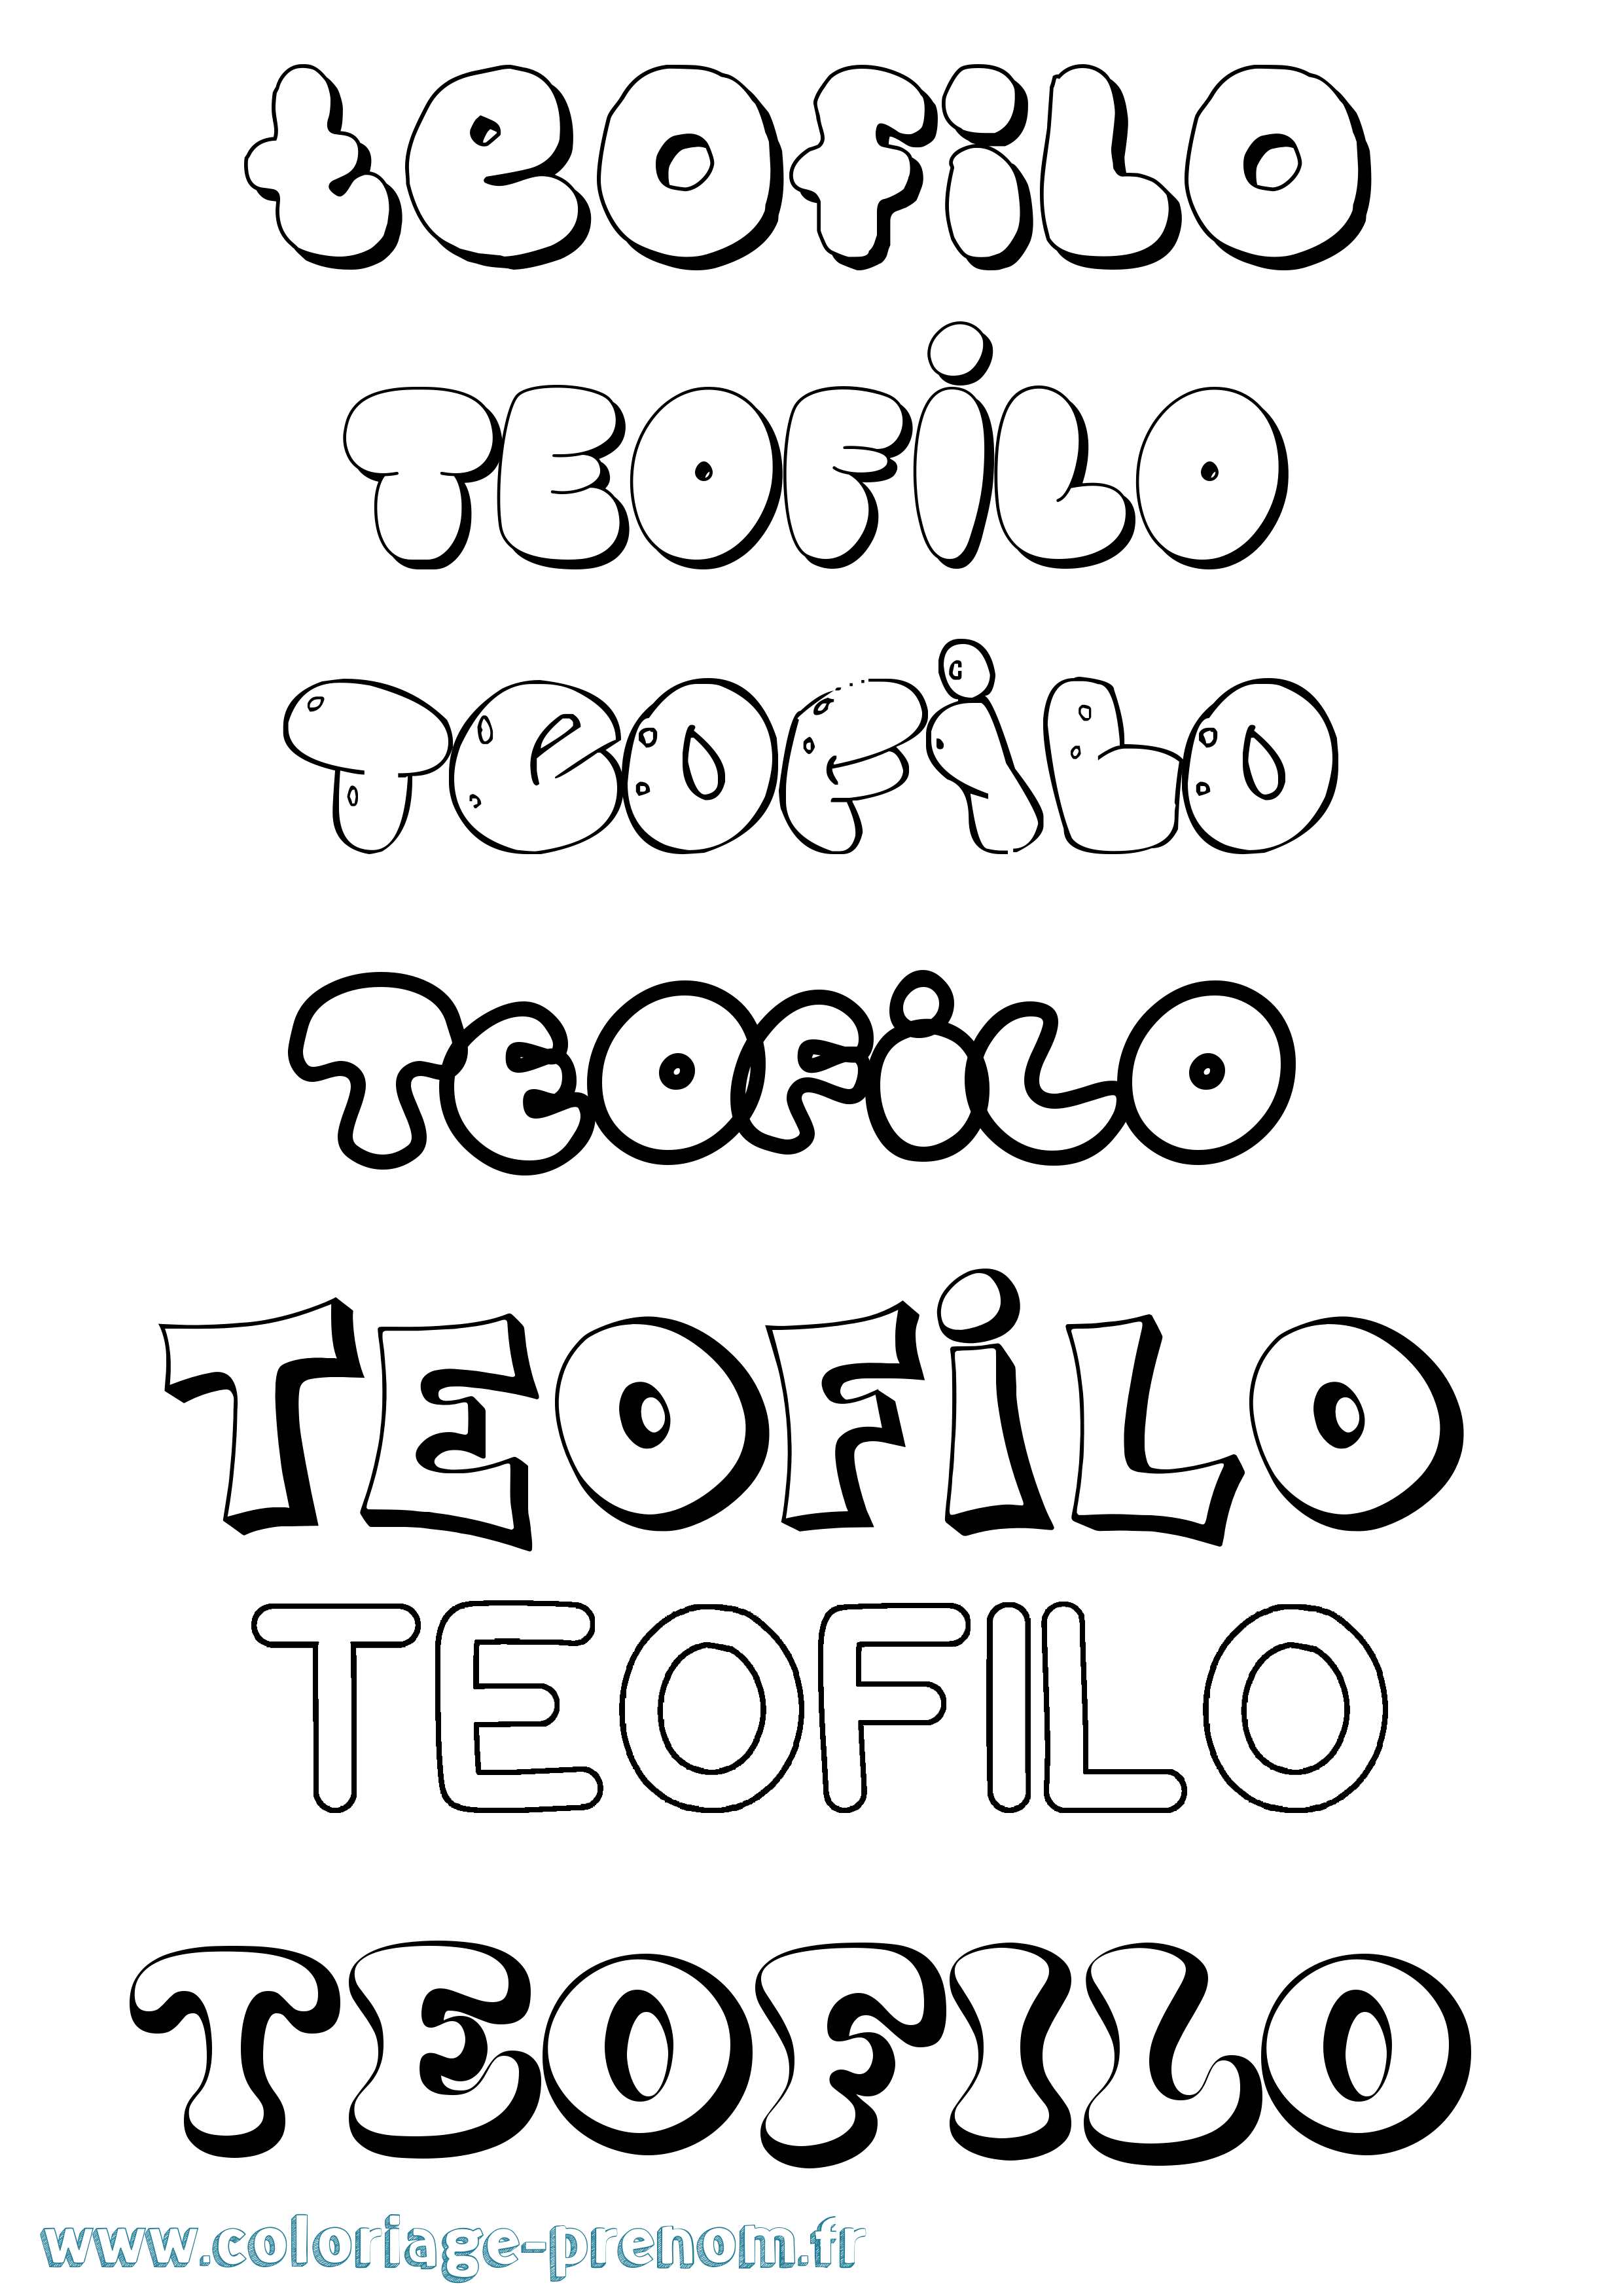 Coloriage prénom Teofilo Bubble